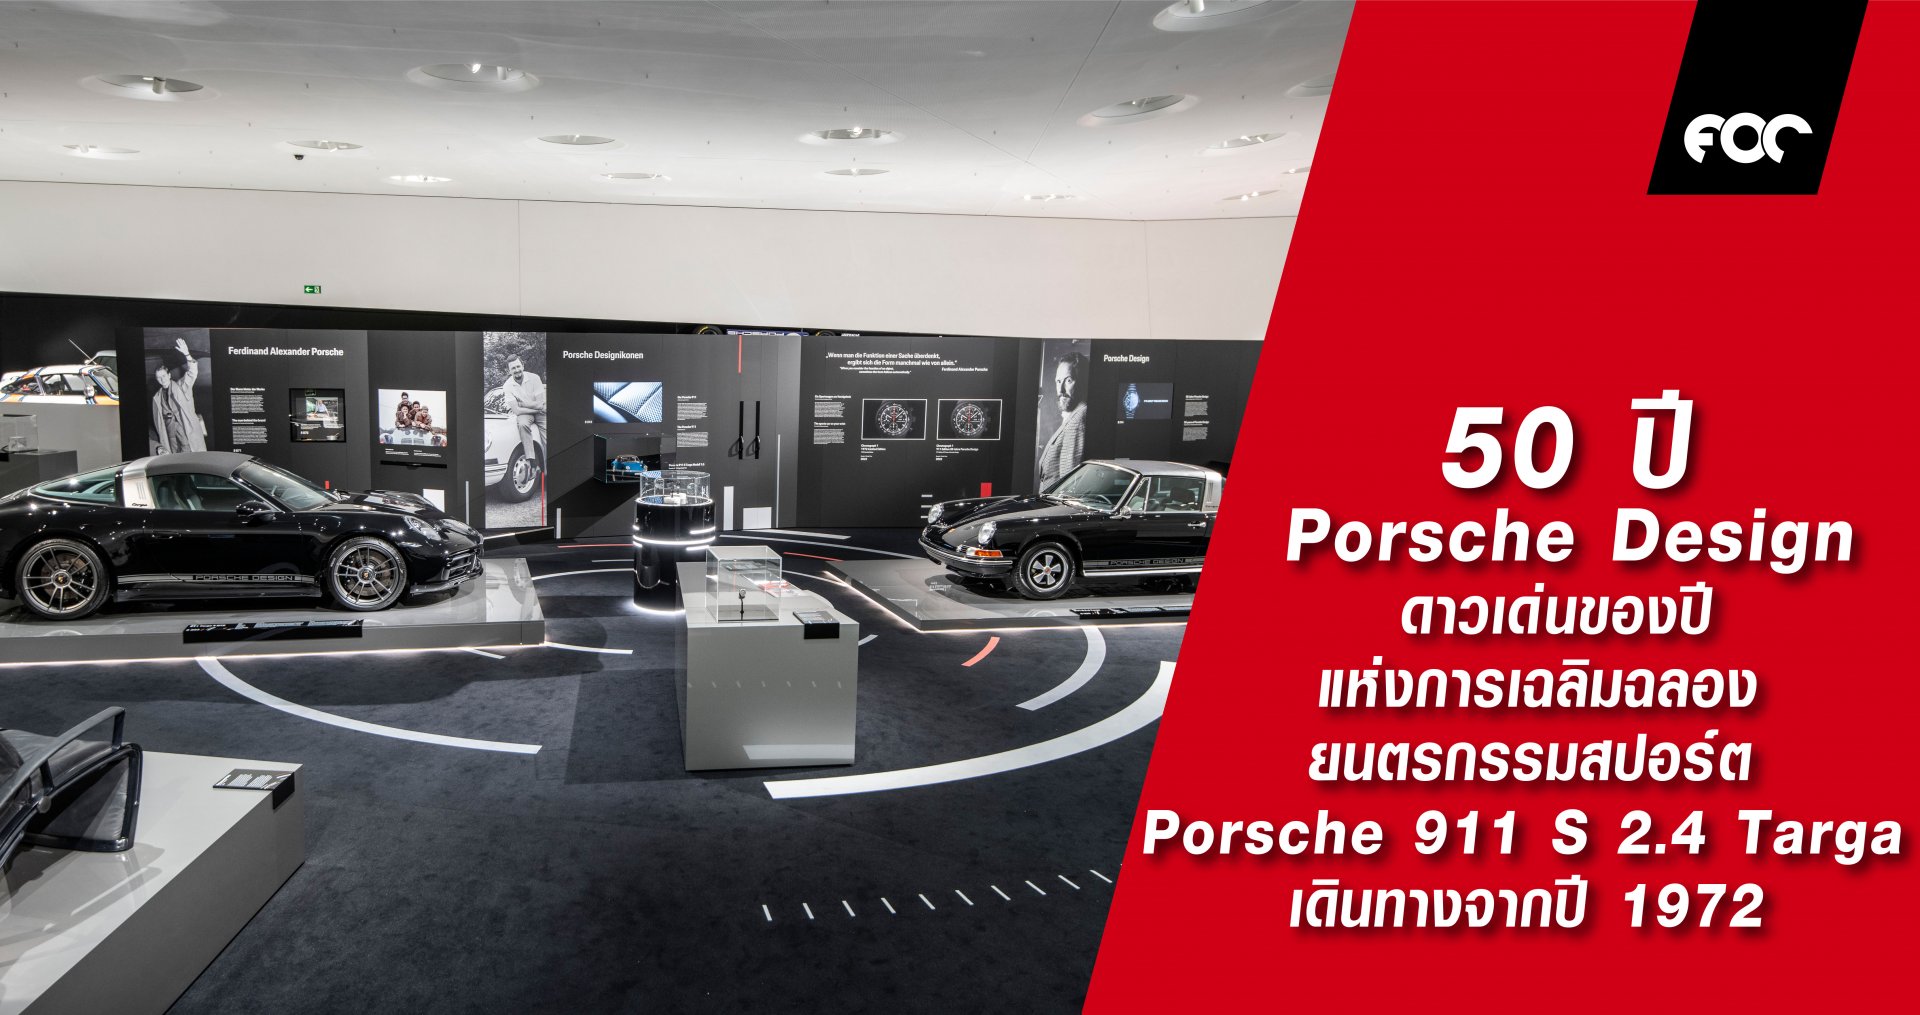 50 ปี Porsche Design